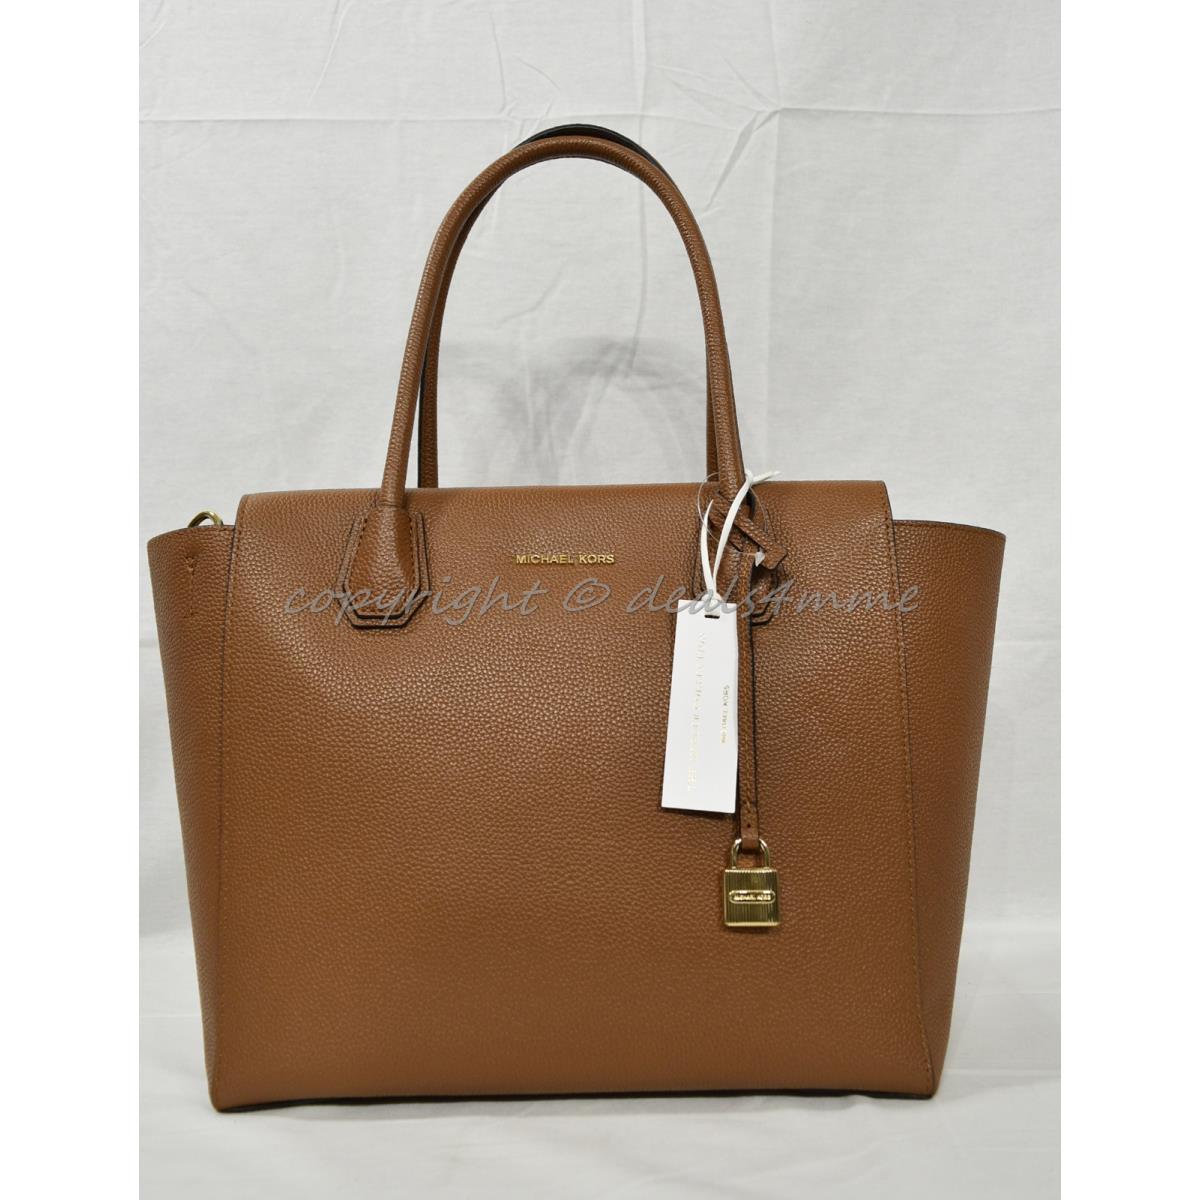 Michael Kors Studio Mercer Large Leather Satchel/shoulder Bag. Luggage Brown